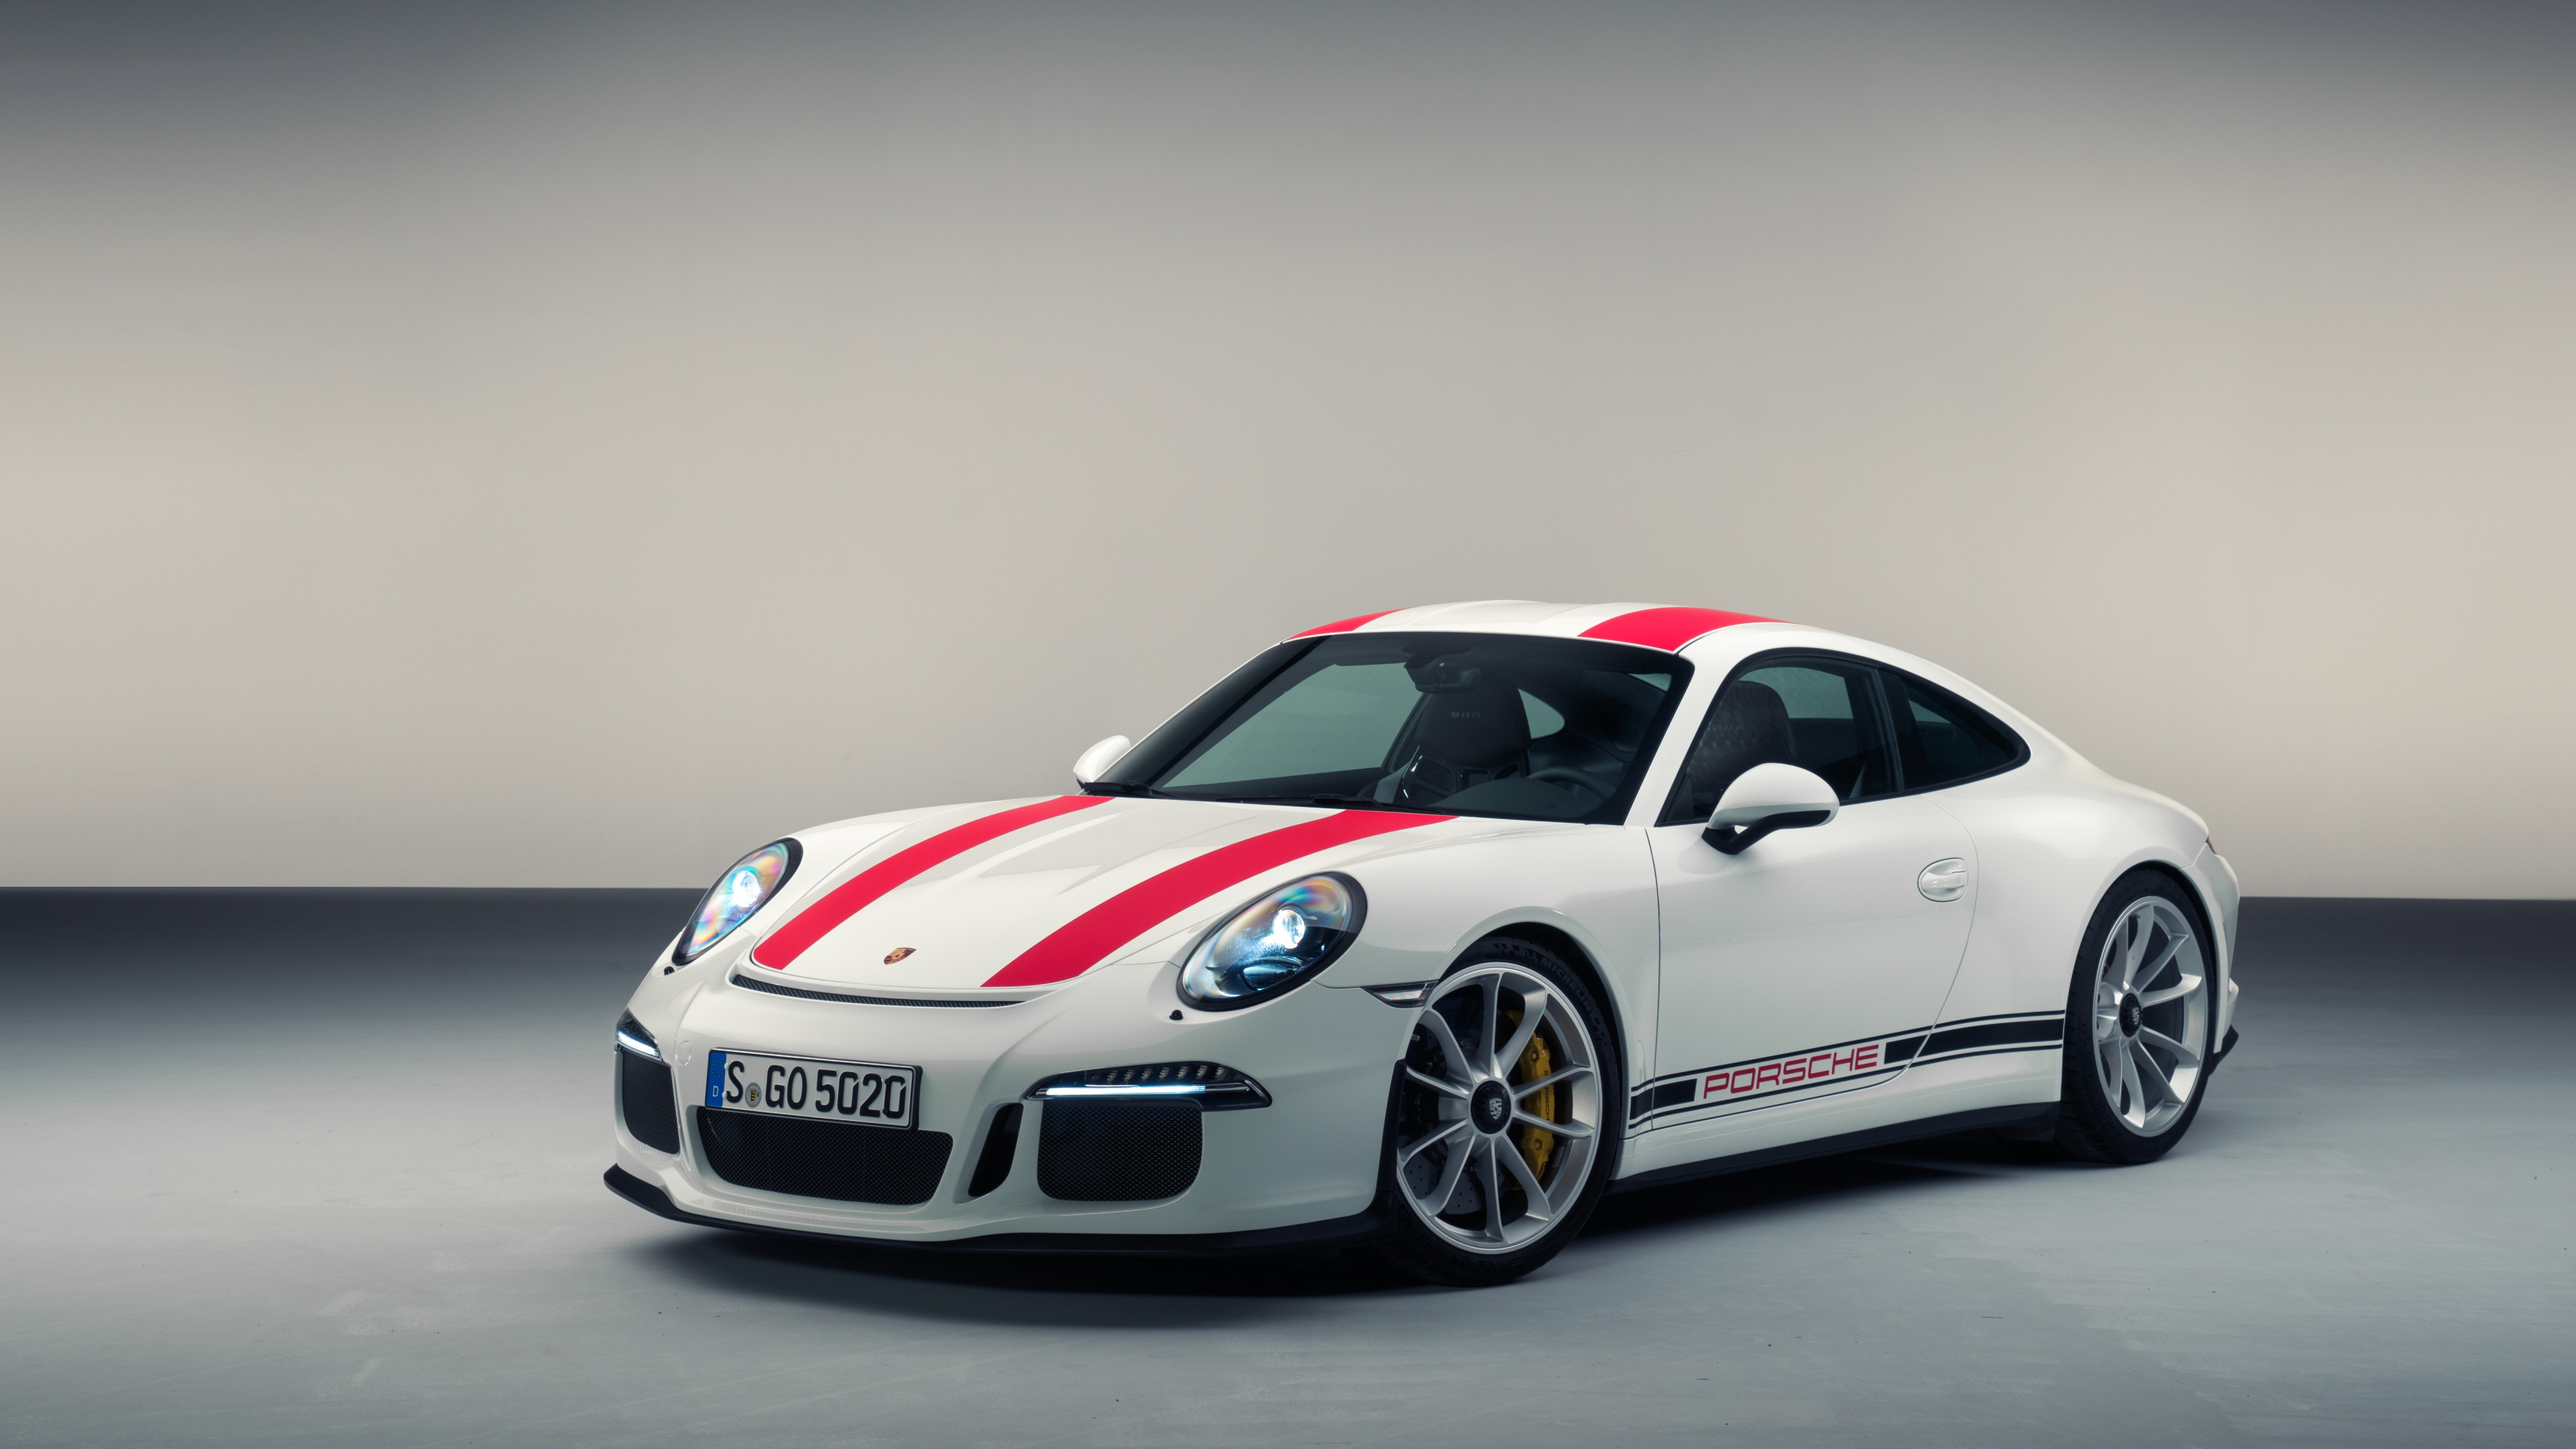 Porsche 911 Blanco y Rojo. Wallpaper in 3840x2160 Resolution